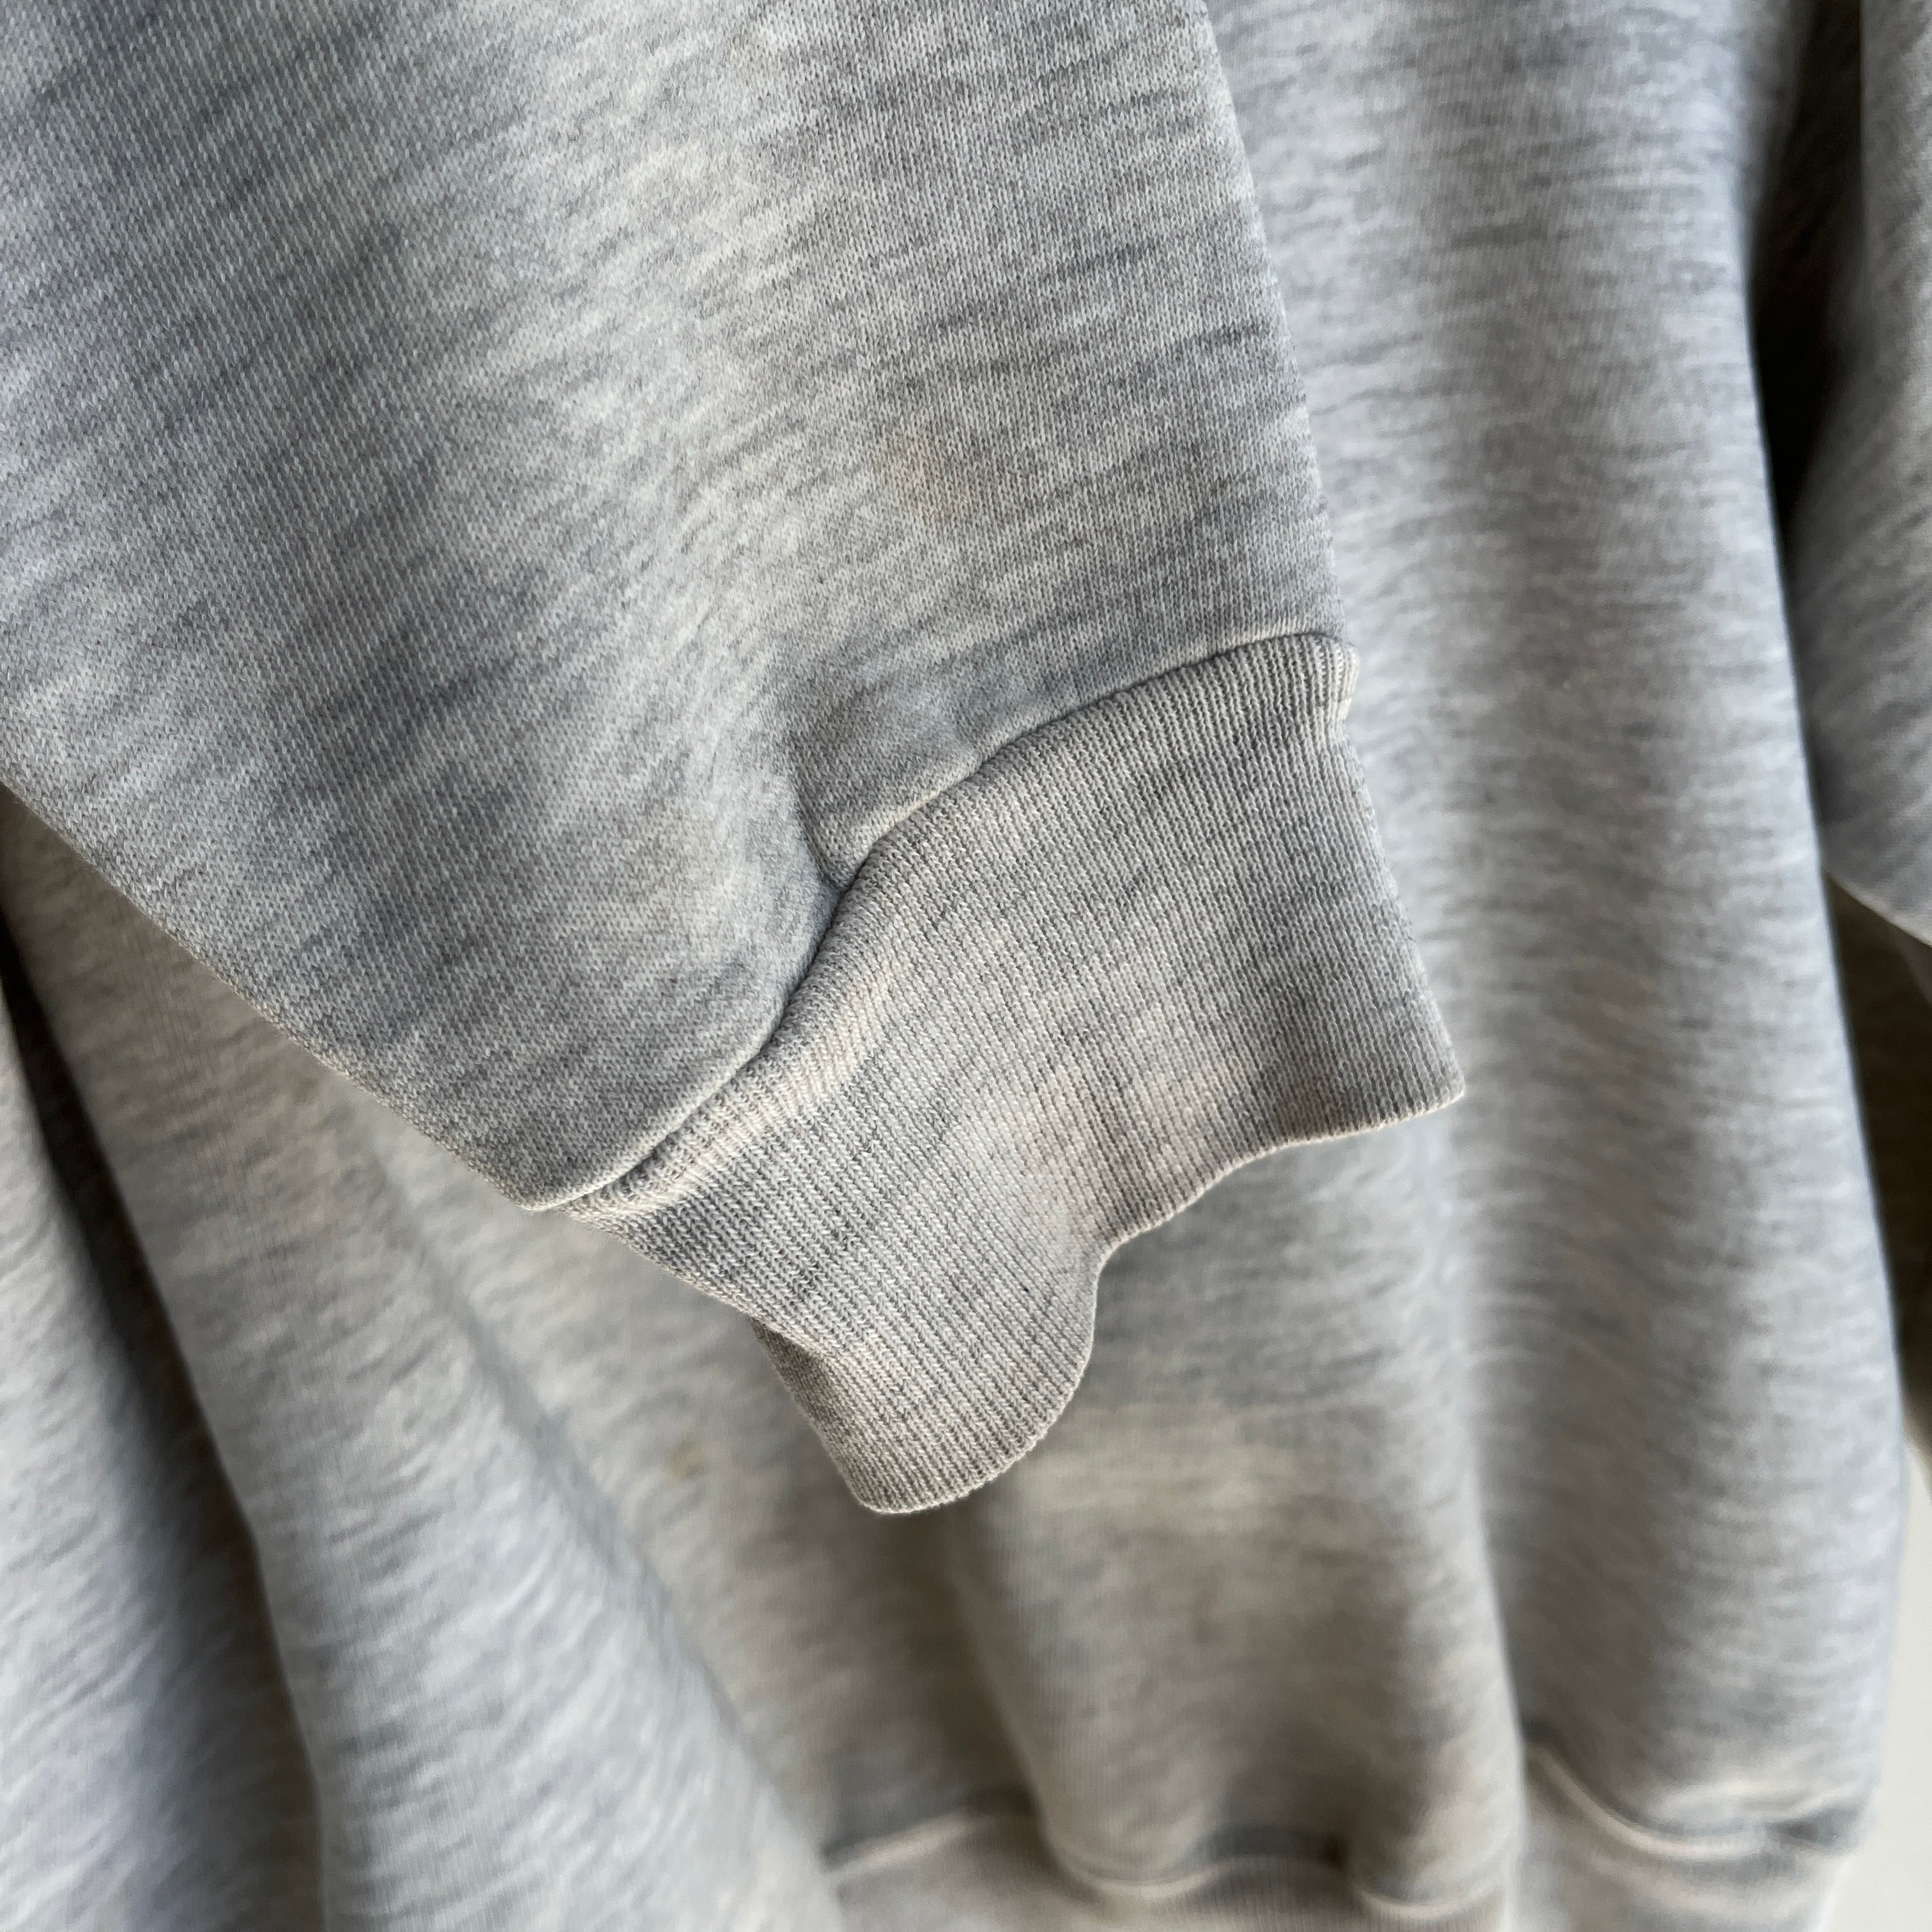 1980s Super Stained Blank Gray Sweatshirt (Feels Like a Bassett Walker)